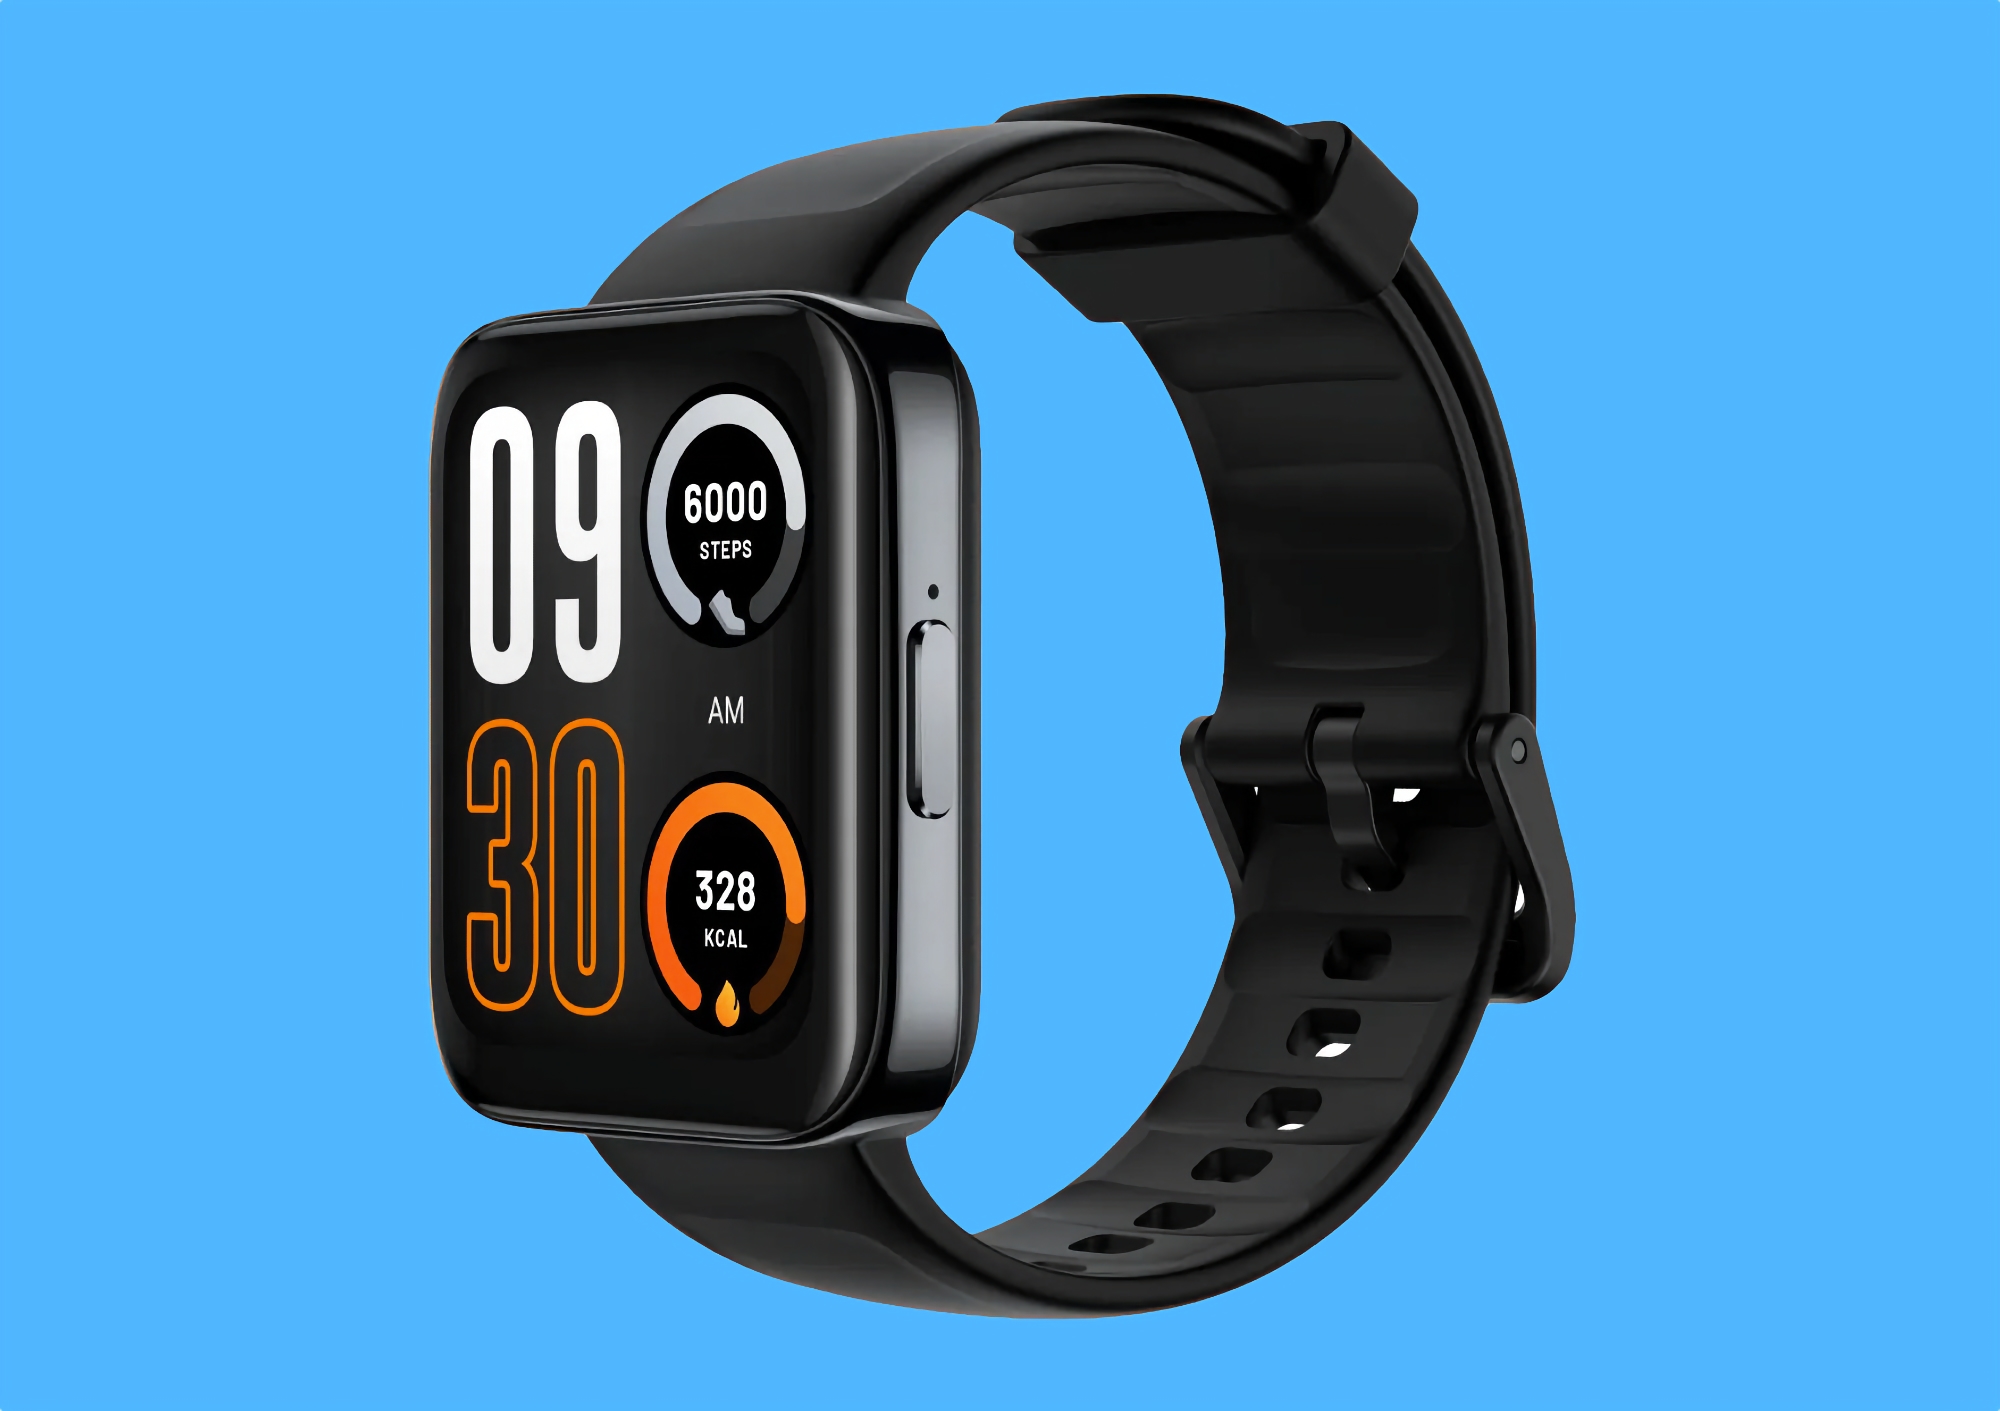 Cuánto costará el smartwatch realme Watch 3 Pro con pantalla AMOLED, GPS y posibilidad de hacer llamadas en Europa